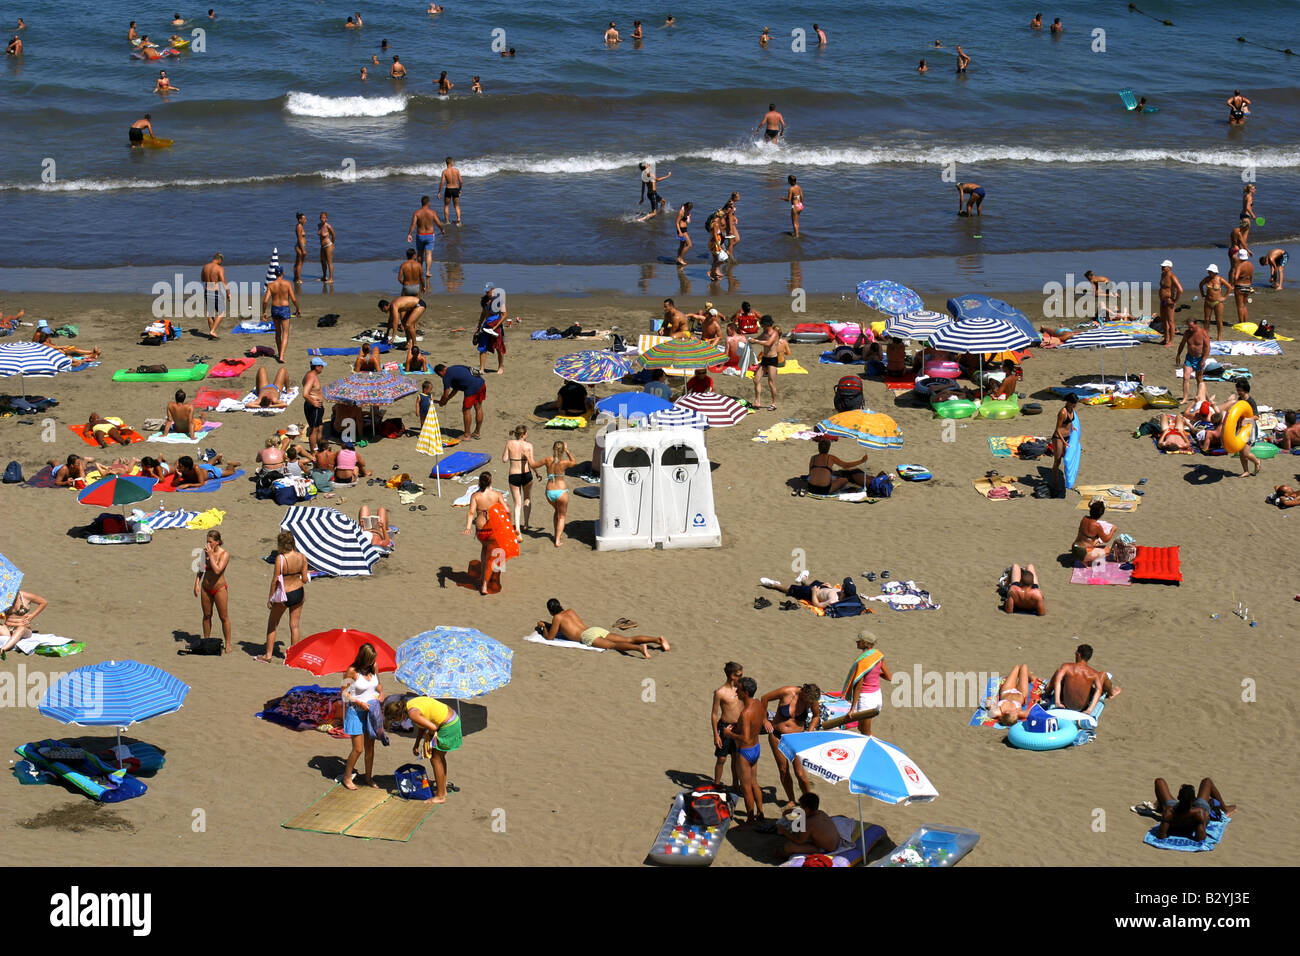 Regenschirm und Sonnenschutz, Strand von Playa del Ingles in Gran